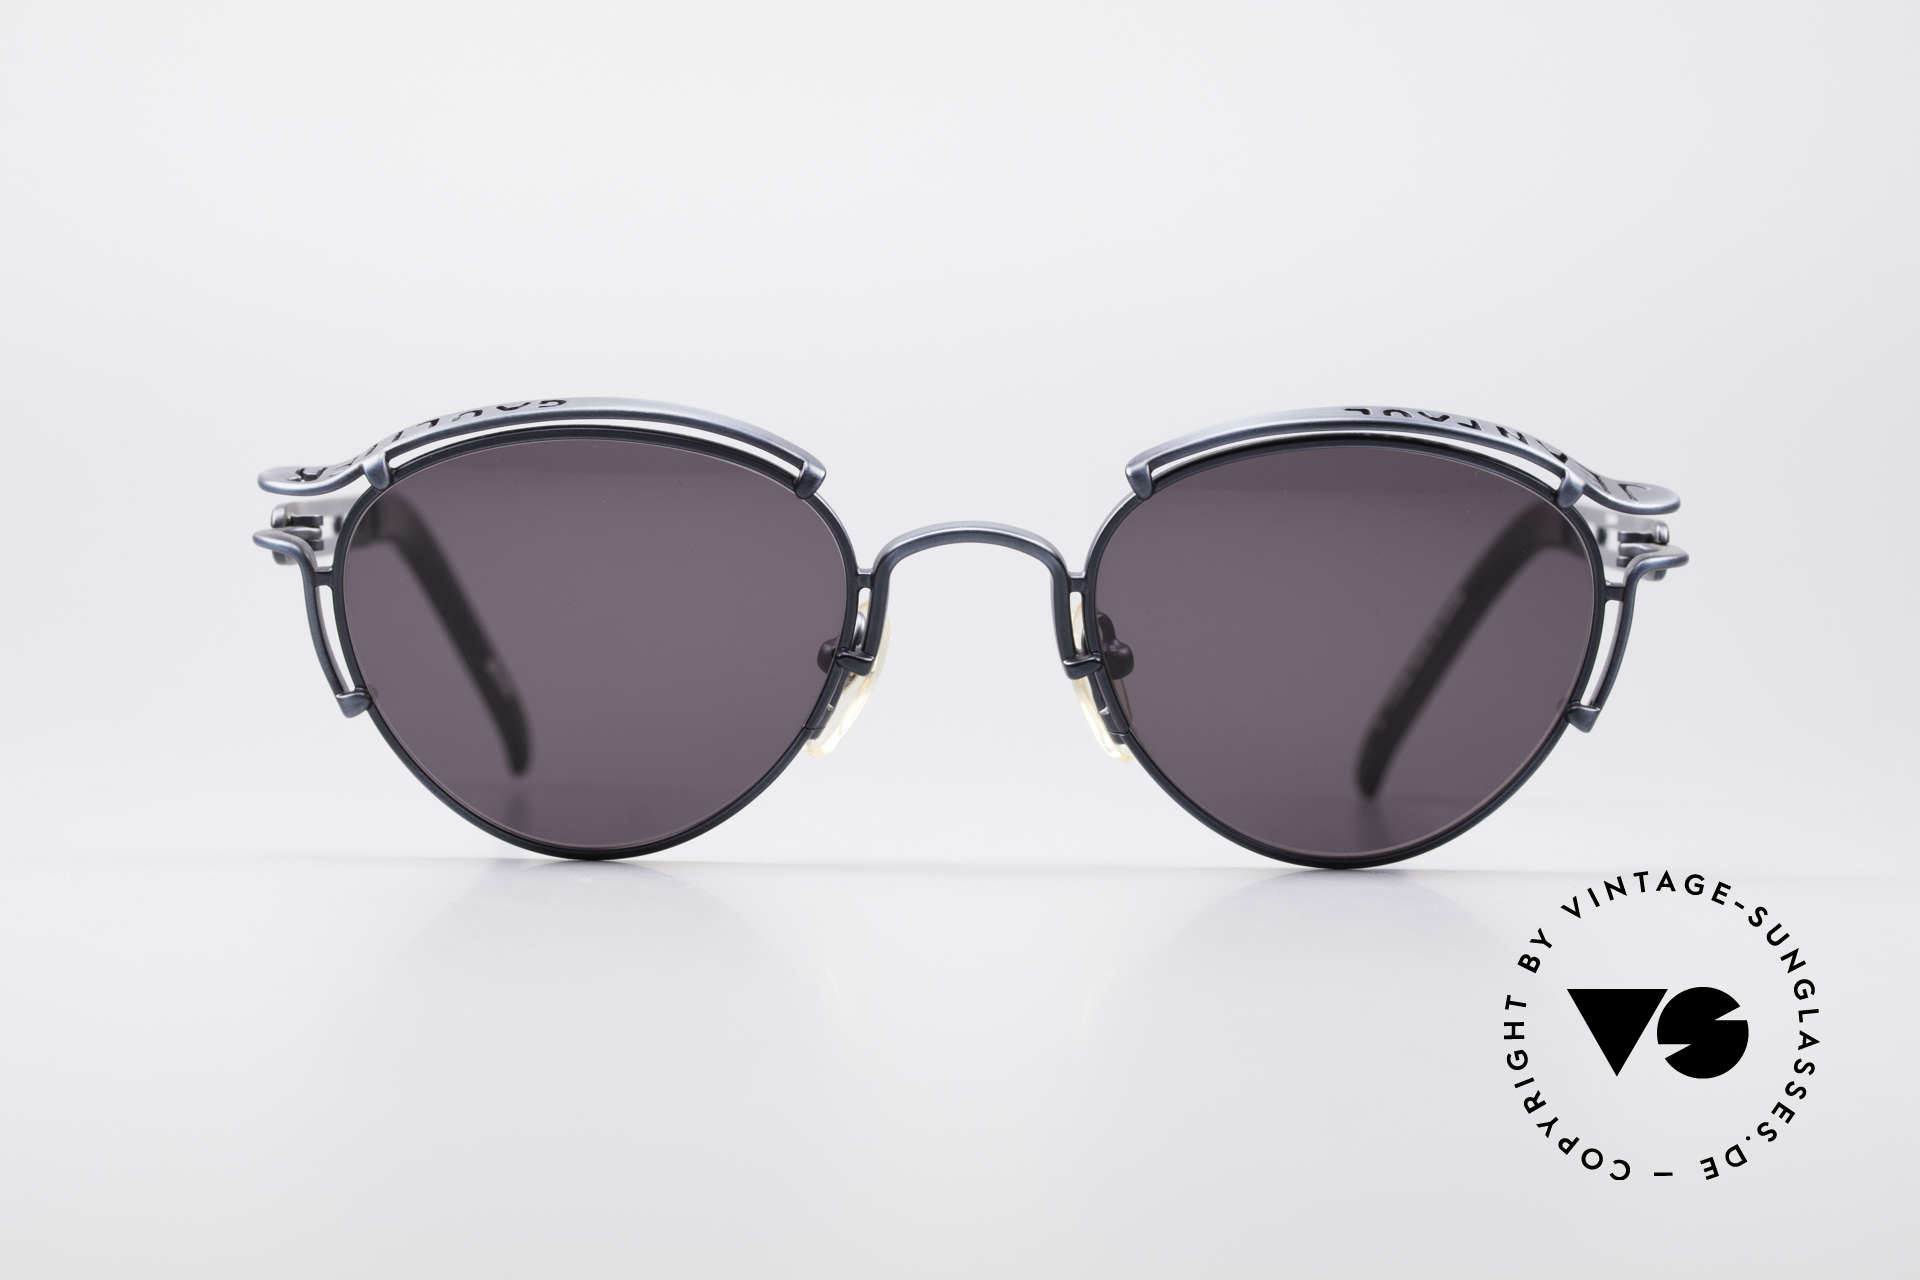 Sunglasses Jean Paul Gaultier 56-5102 Rare Celebrity Sunglasses